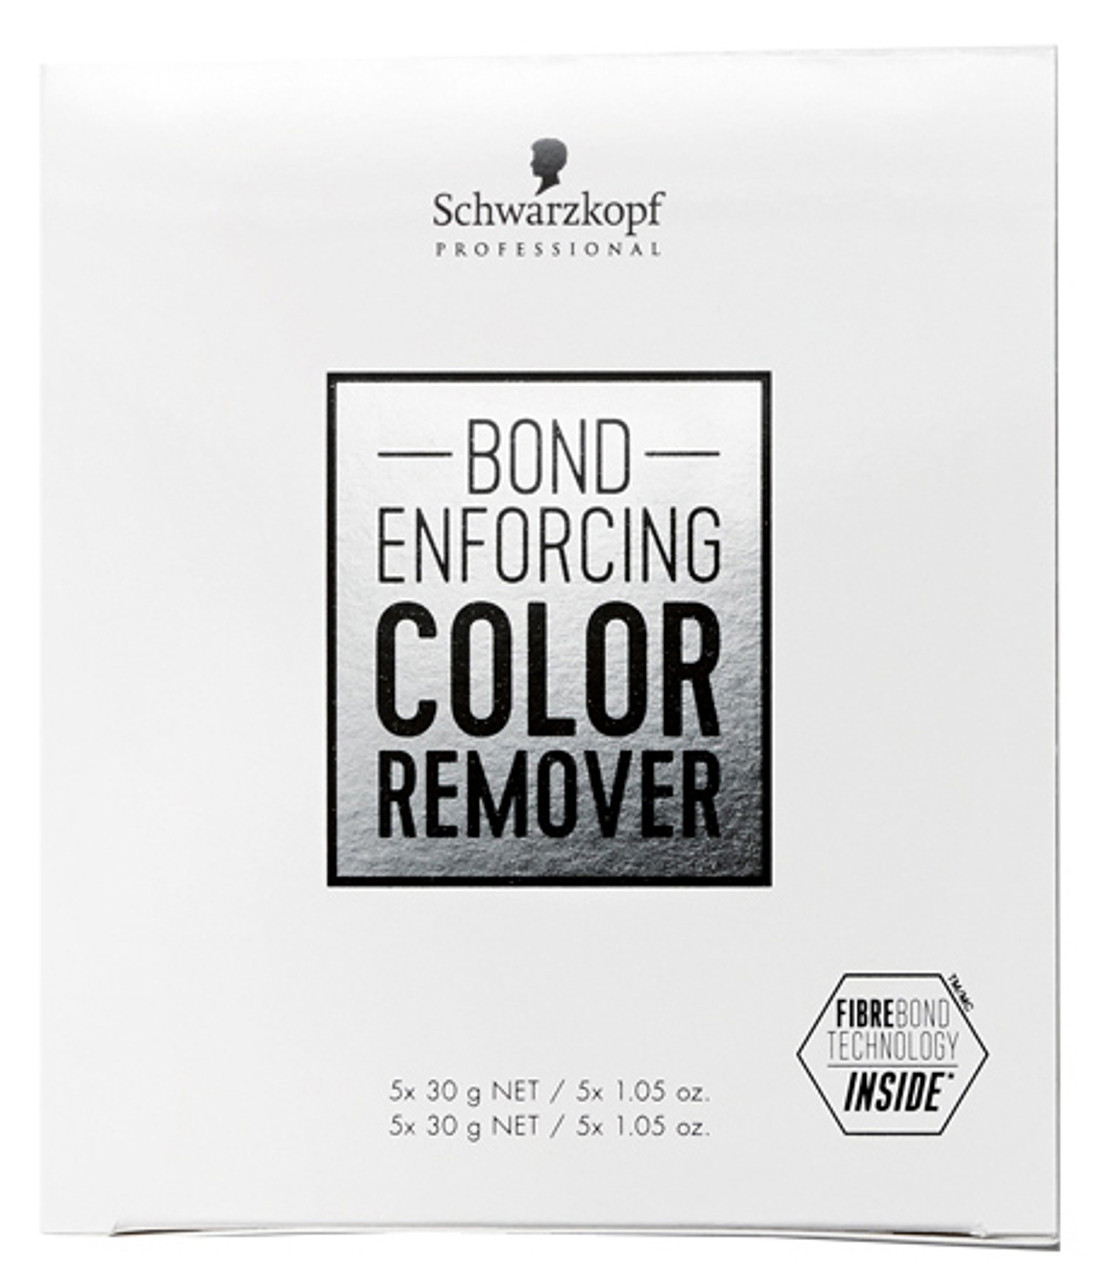 Schwarzkopf Bond Enforcing Color Remover